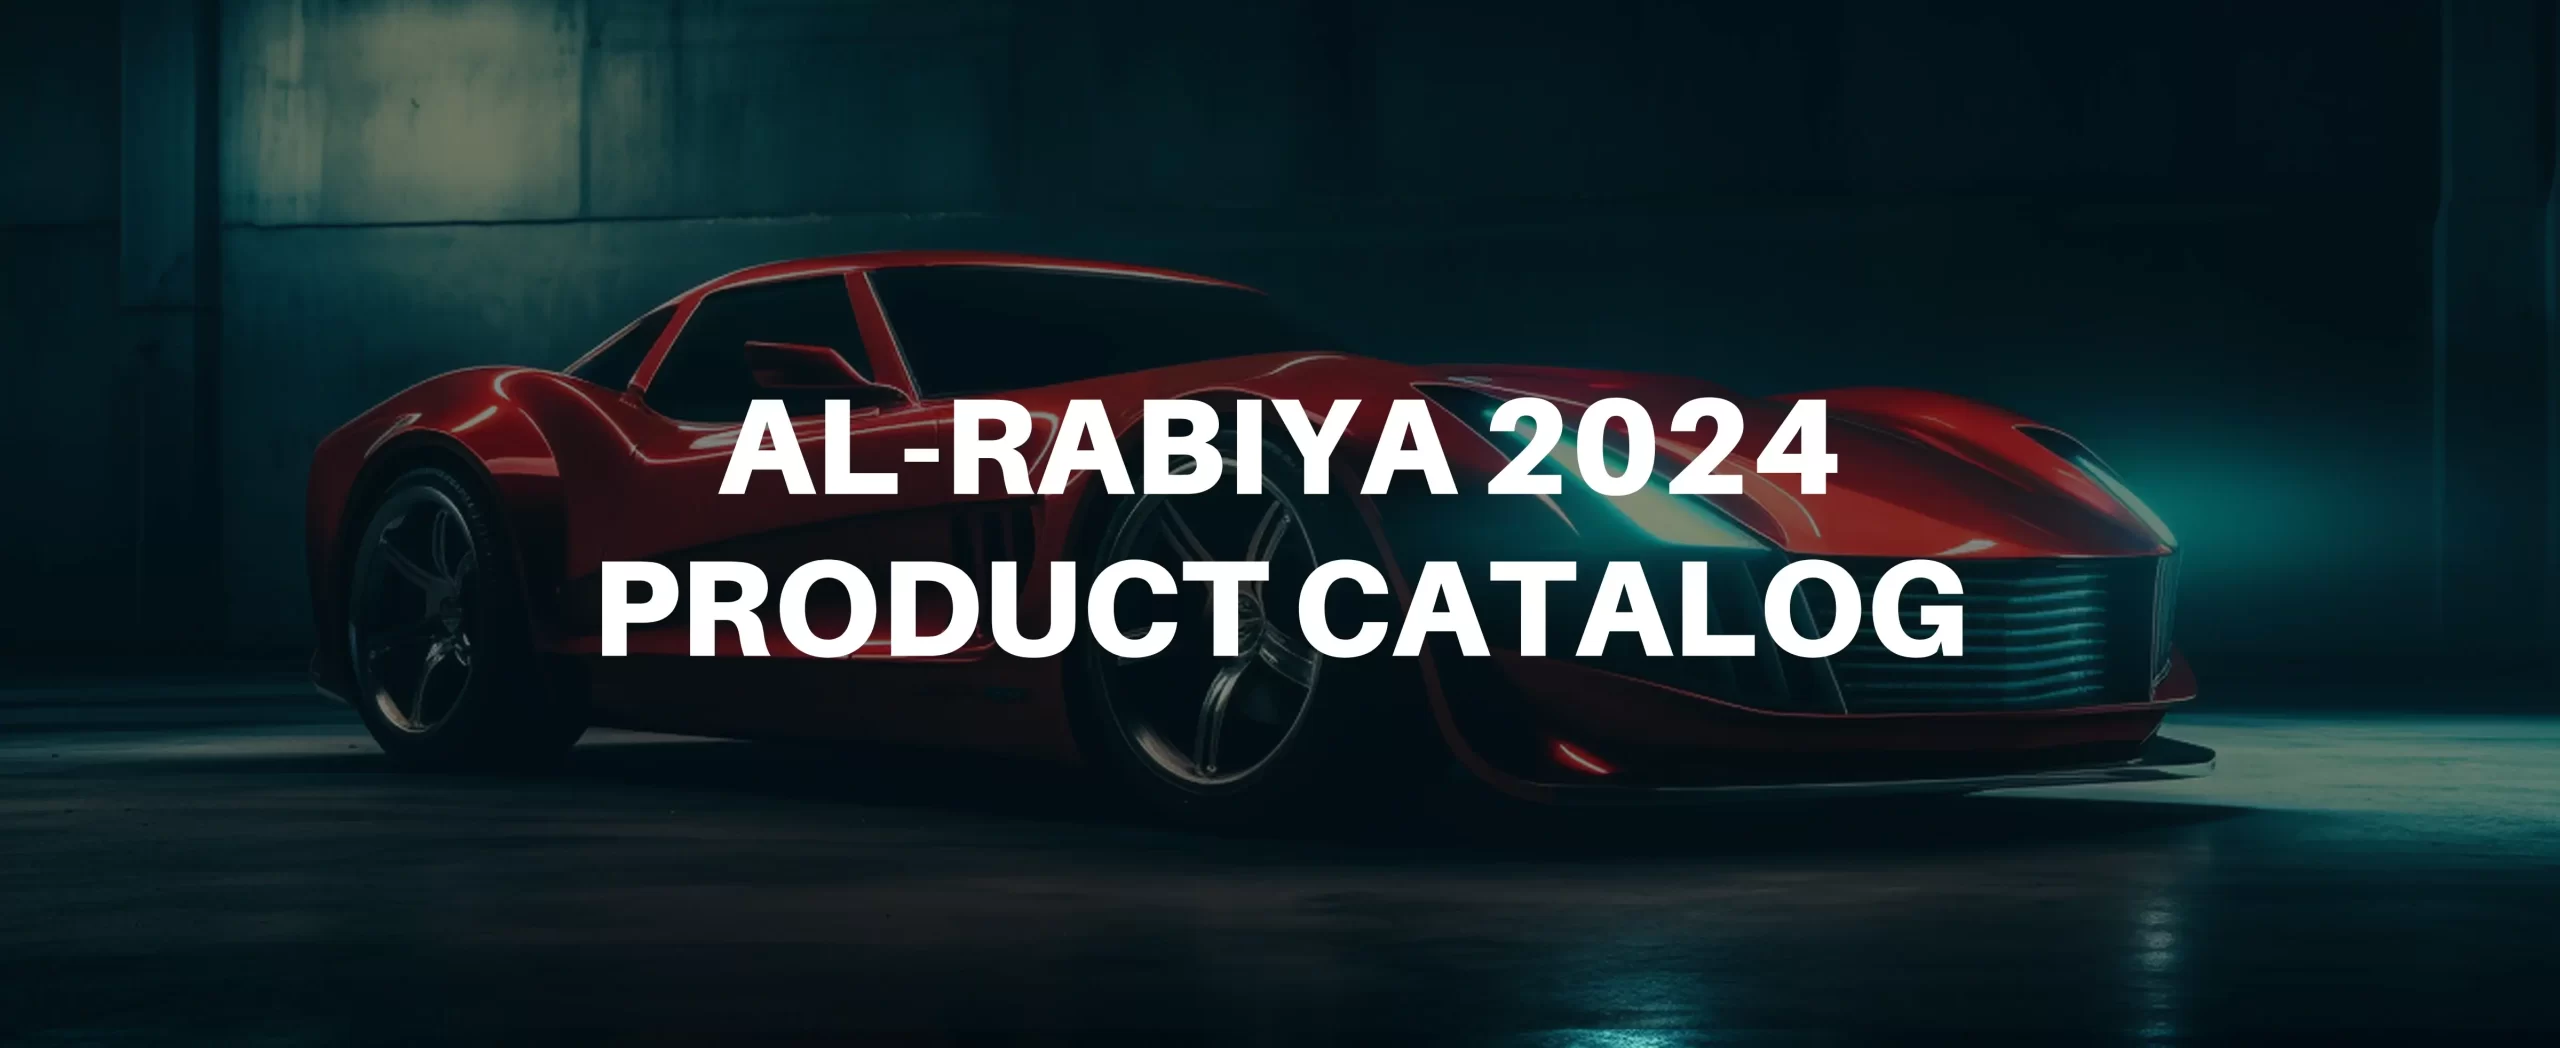 Al-rabiya-Car-Care-Product-Catalog-2024